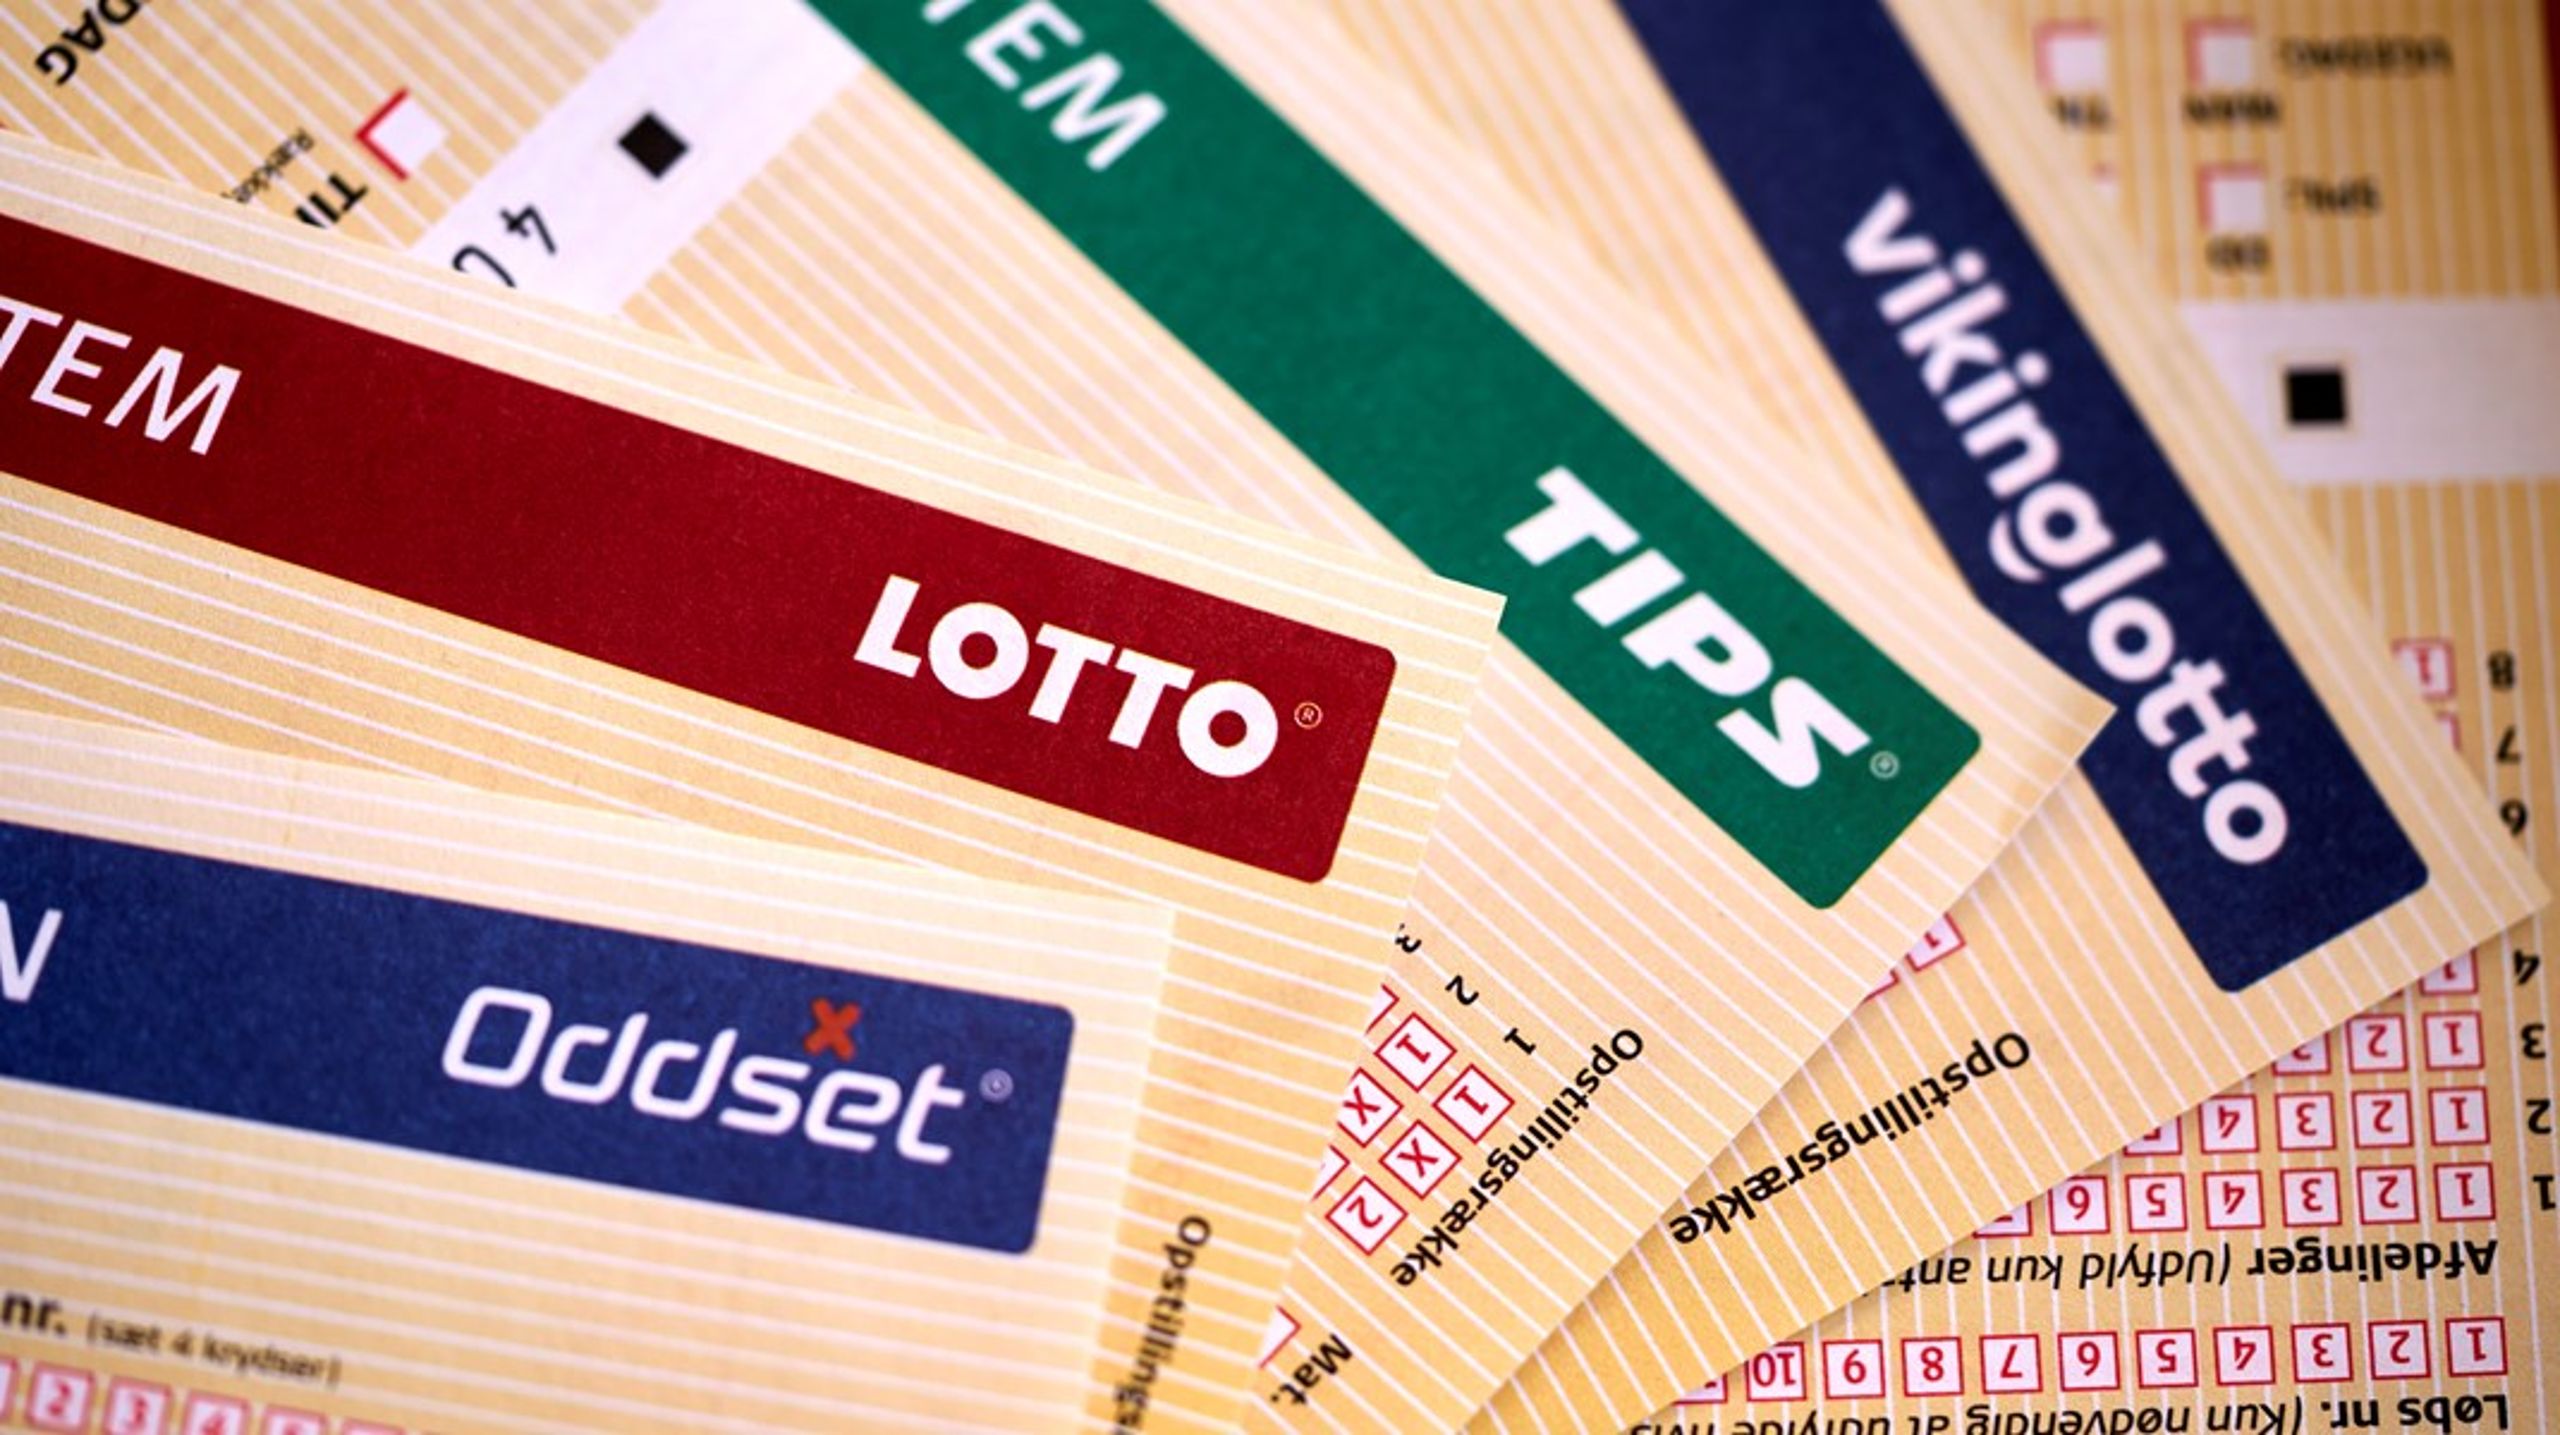 Tips blev indført i 1949. I henholdsvis 1988 og 1994 kom Lotto og Oddset til.